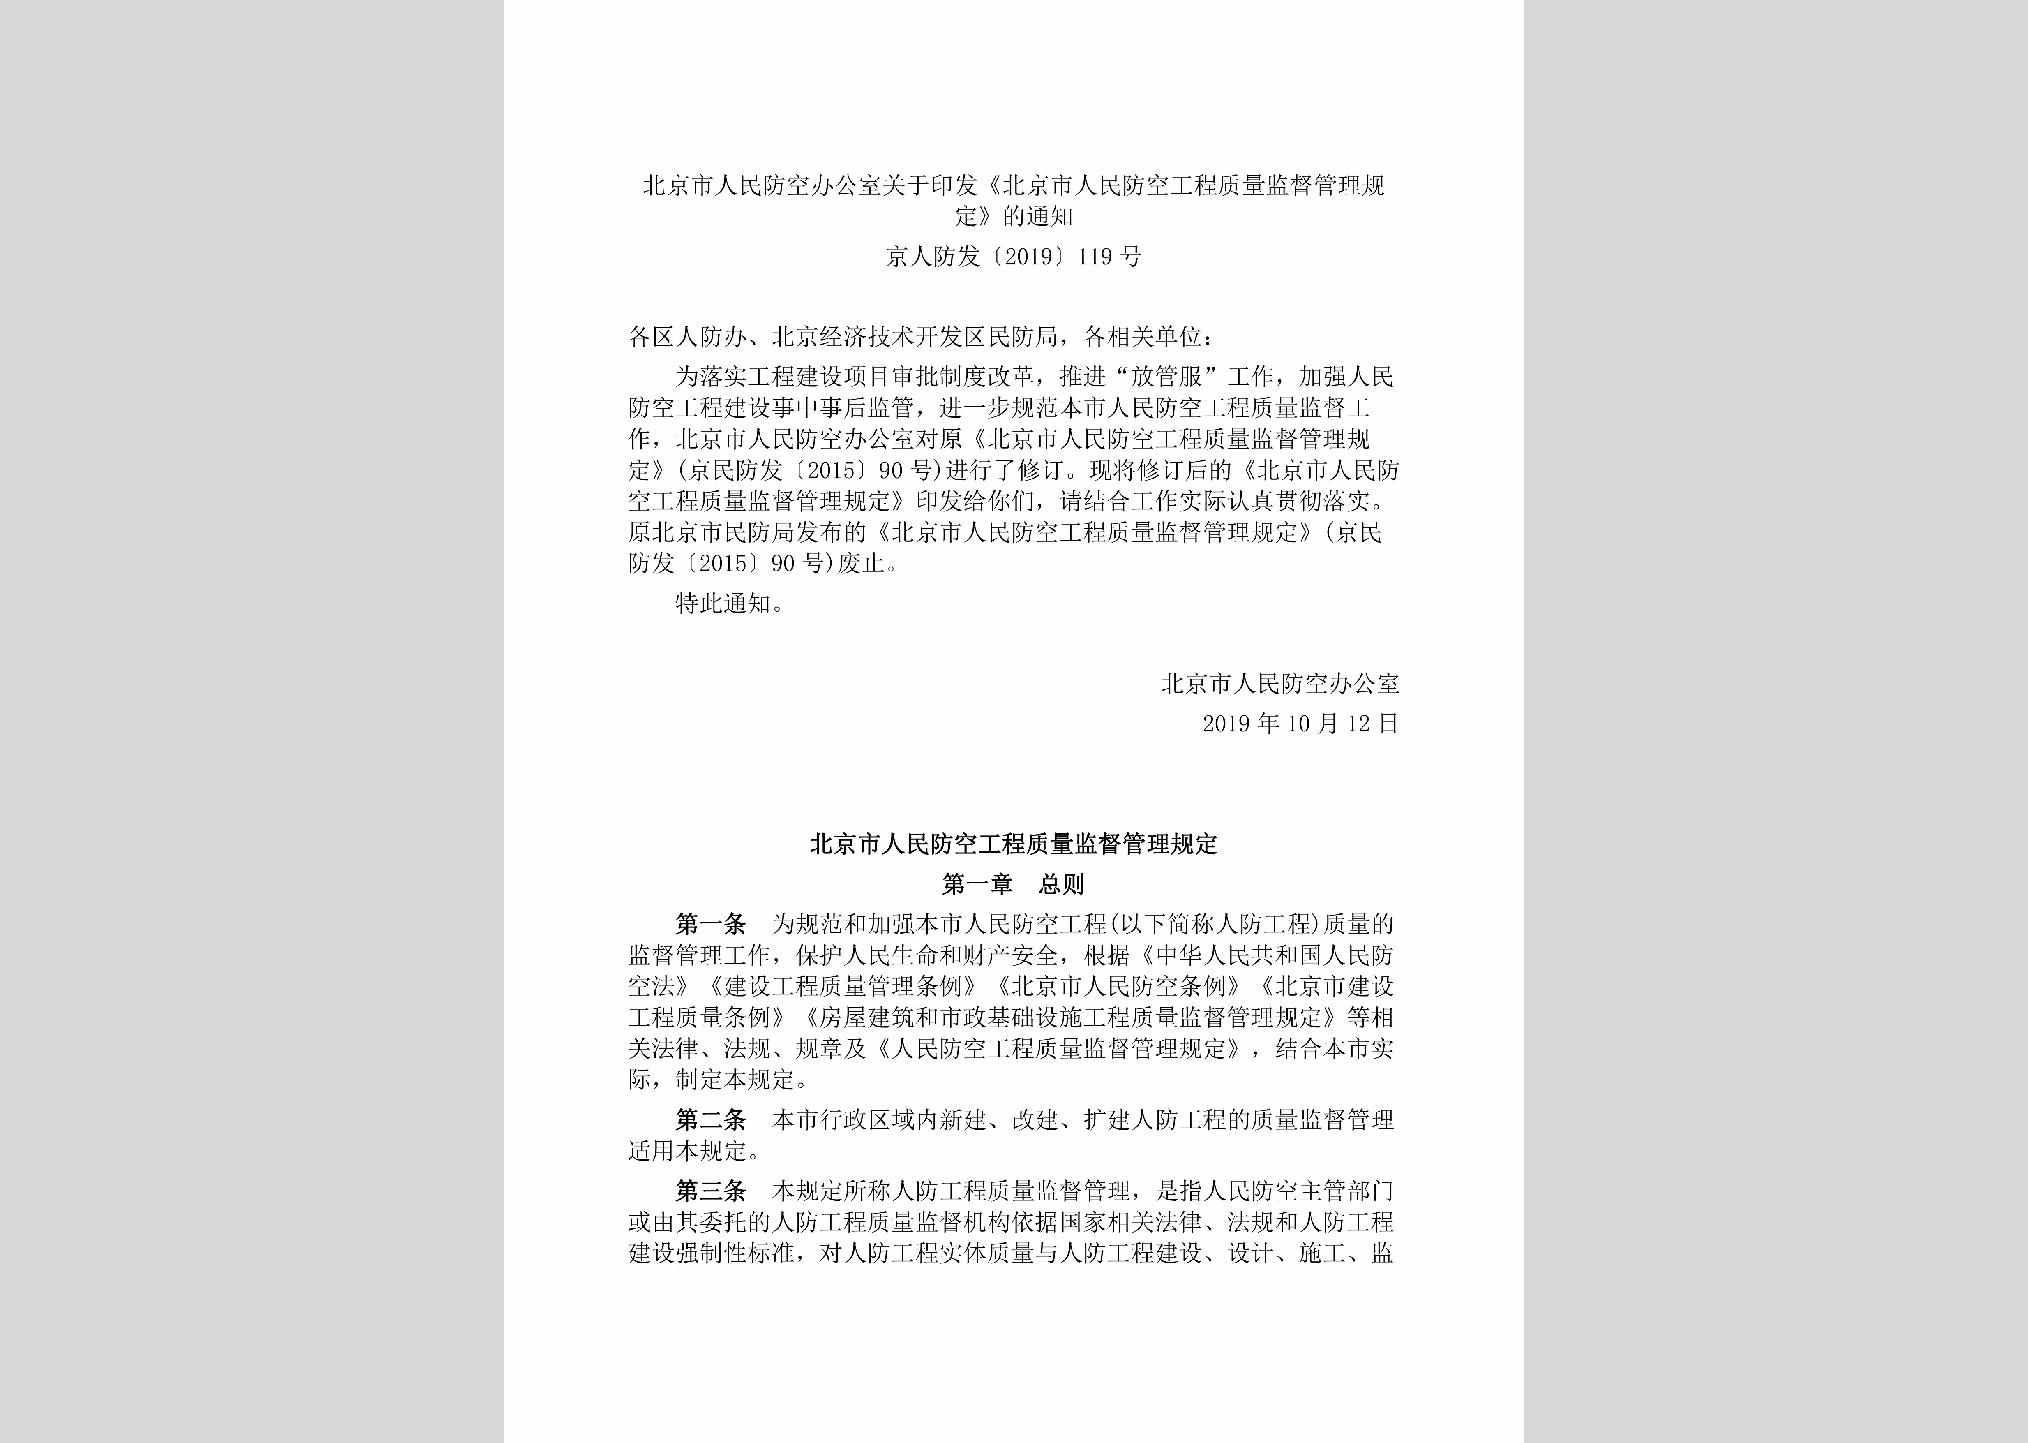 京人防发[2019]119号：北京市人民防空办公室关于印发《北京市人民防空工程质量监督管理规定》的通知